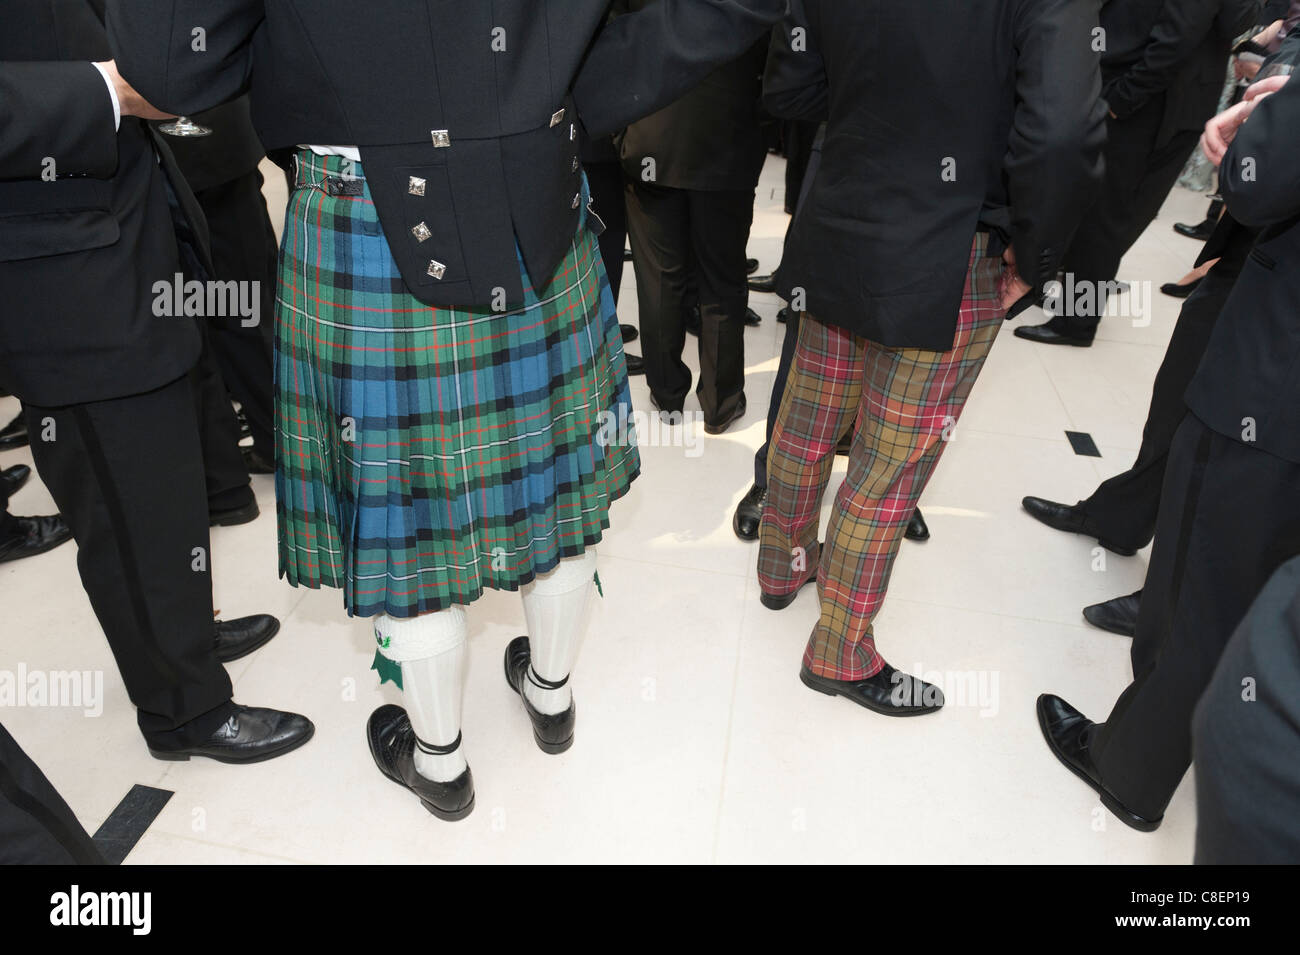 Et comme pantalon kilt en tartan usée à un événement formel par les hommes d'origine écossaise. Banque D'Images